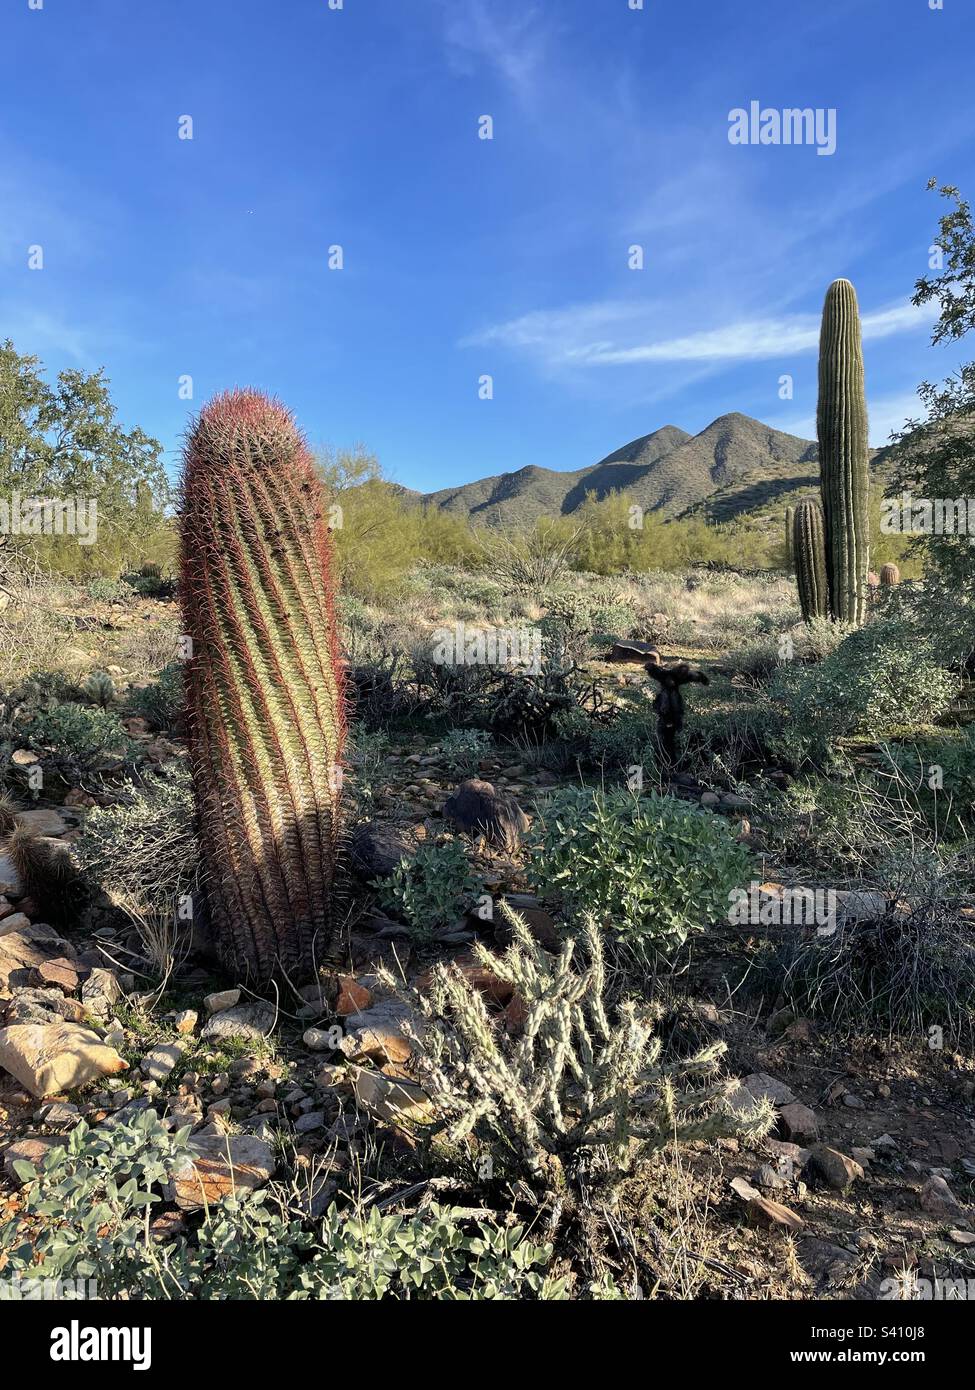 Cactus à canon torsadé, cactus Cholla, buissons fragiles en premier plan, ciel bleu brillant, montagnes McDowell et cactus Saguaro en arrière-plan, sentier Lost Dog, désert de Sonoran, Phoenix, Arizona Banque D'Images